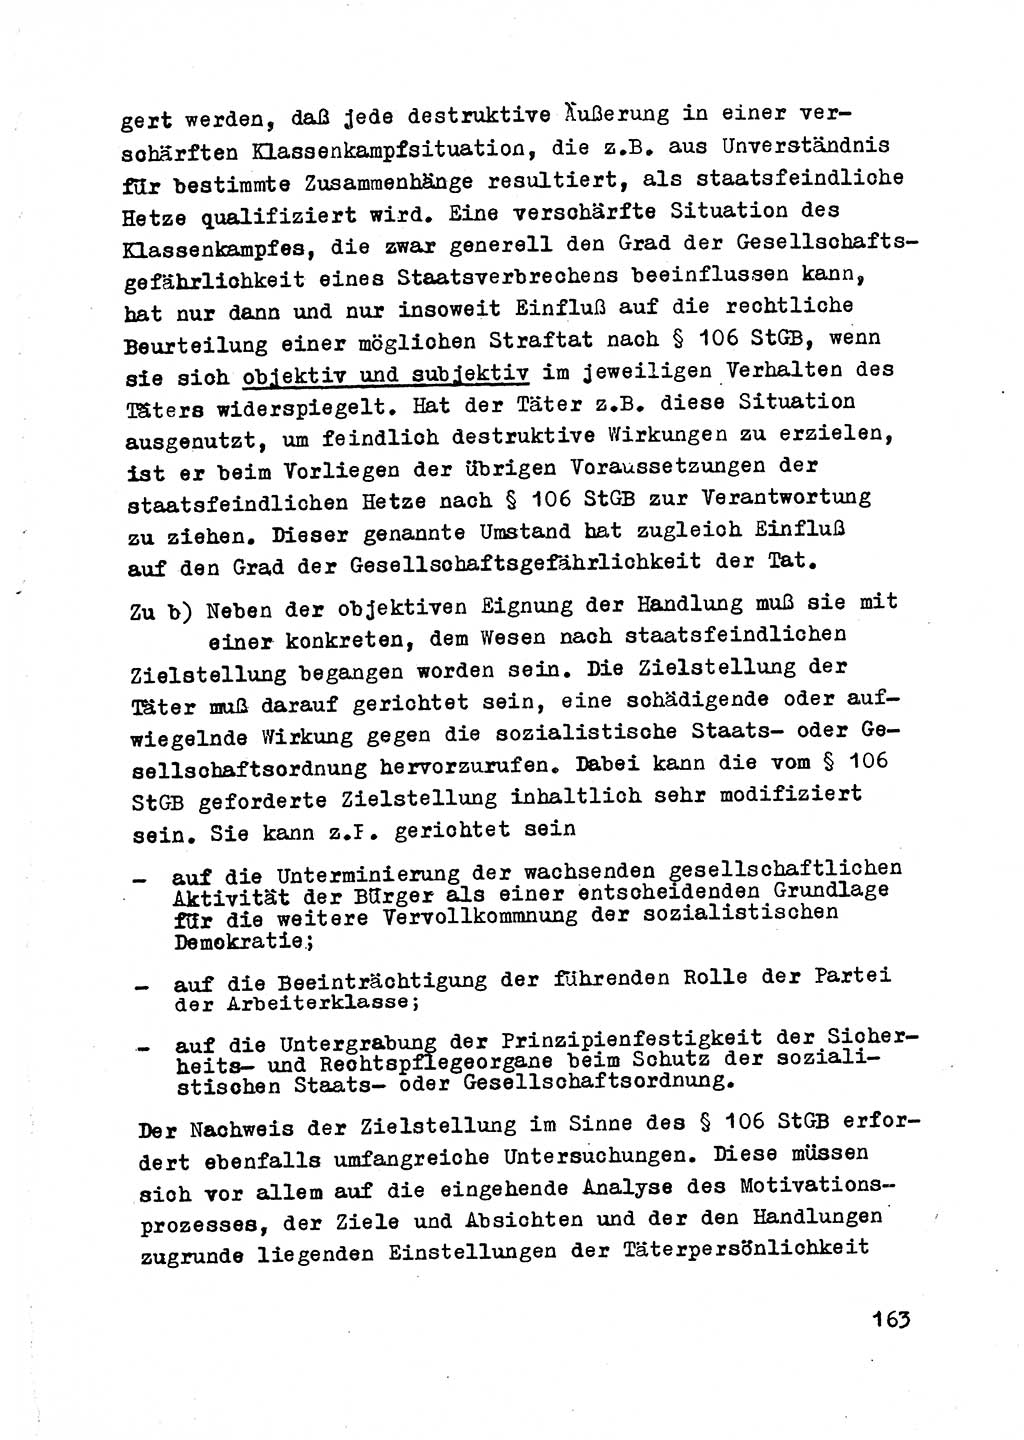 Strafrecht der DDR (Deutsche Demokratische Republik), Besonderer Teil, Lehrmaterial, Heft 2 1969, Seite 163 (Strafr. DDR BT Lehrmat. H. 2 1969, S. 163)